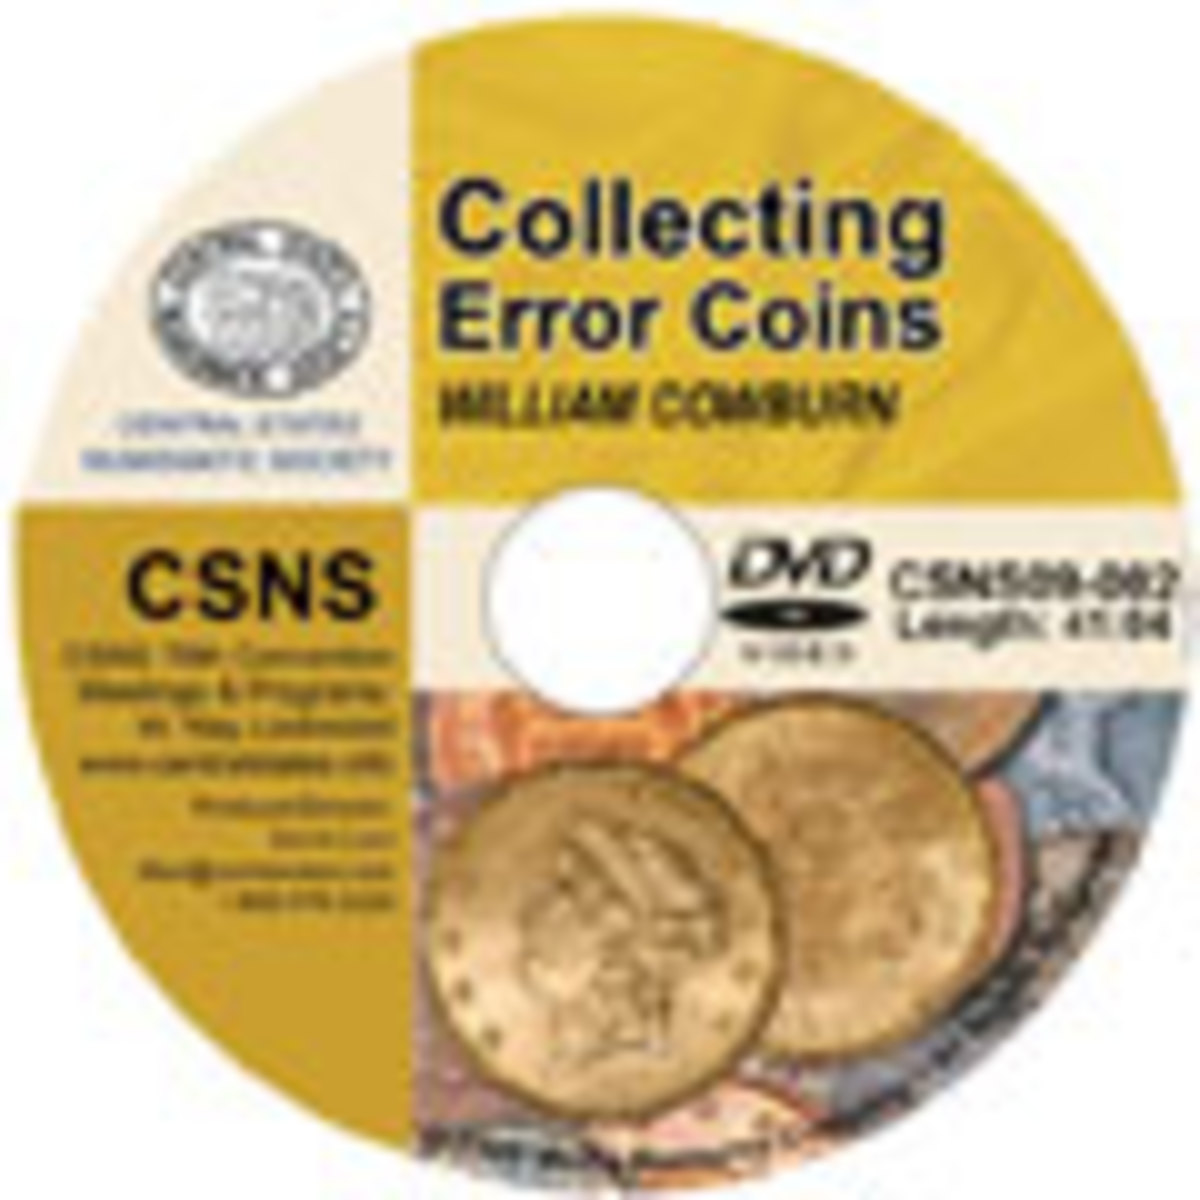 Collecting Error Coins